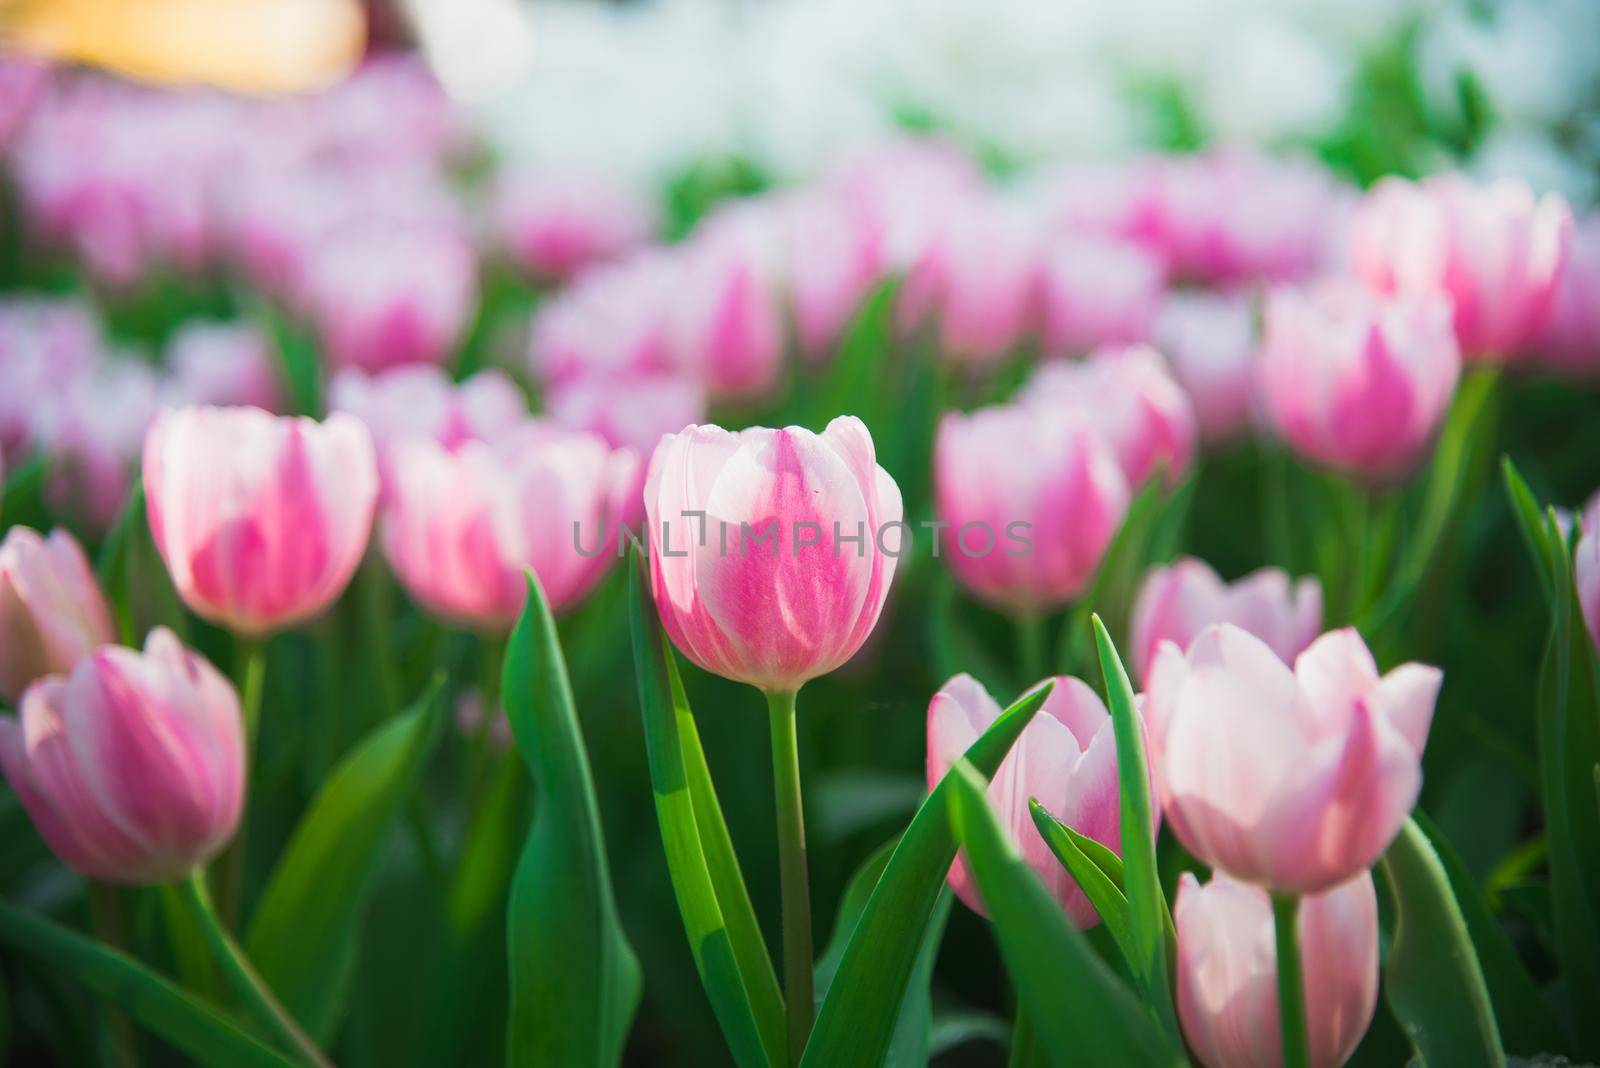 tulips in spring sun by Wmpix